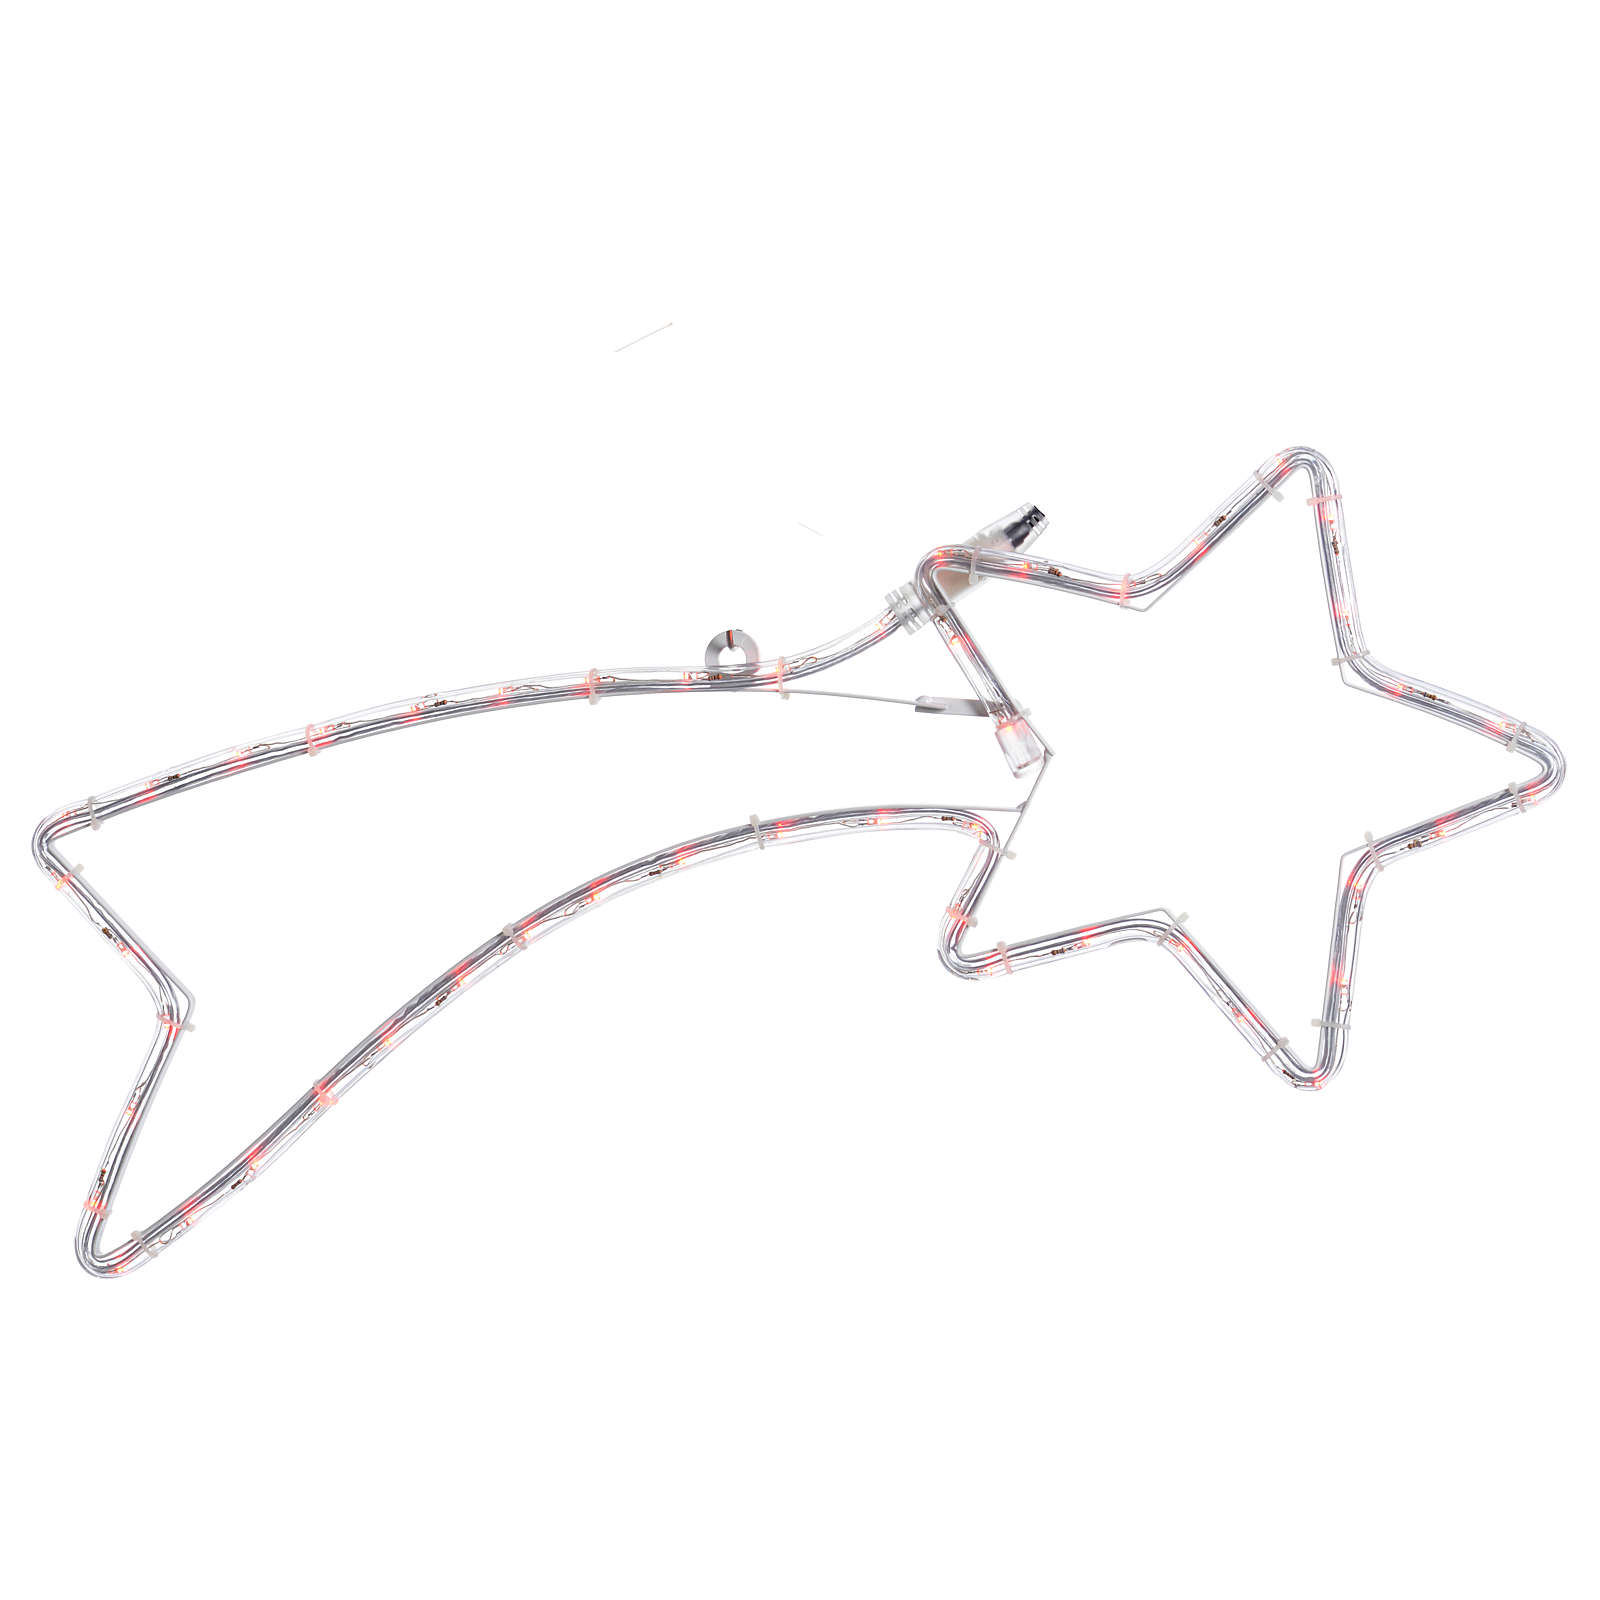 Disegno Stella Cometa Di Natale.Decorazione Stella Cometa 36 Led Rossi Per Esterno 65x30 Cm Vendita Online Su Holyart